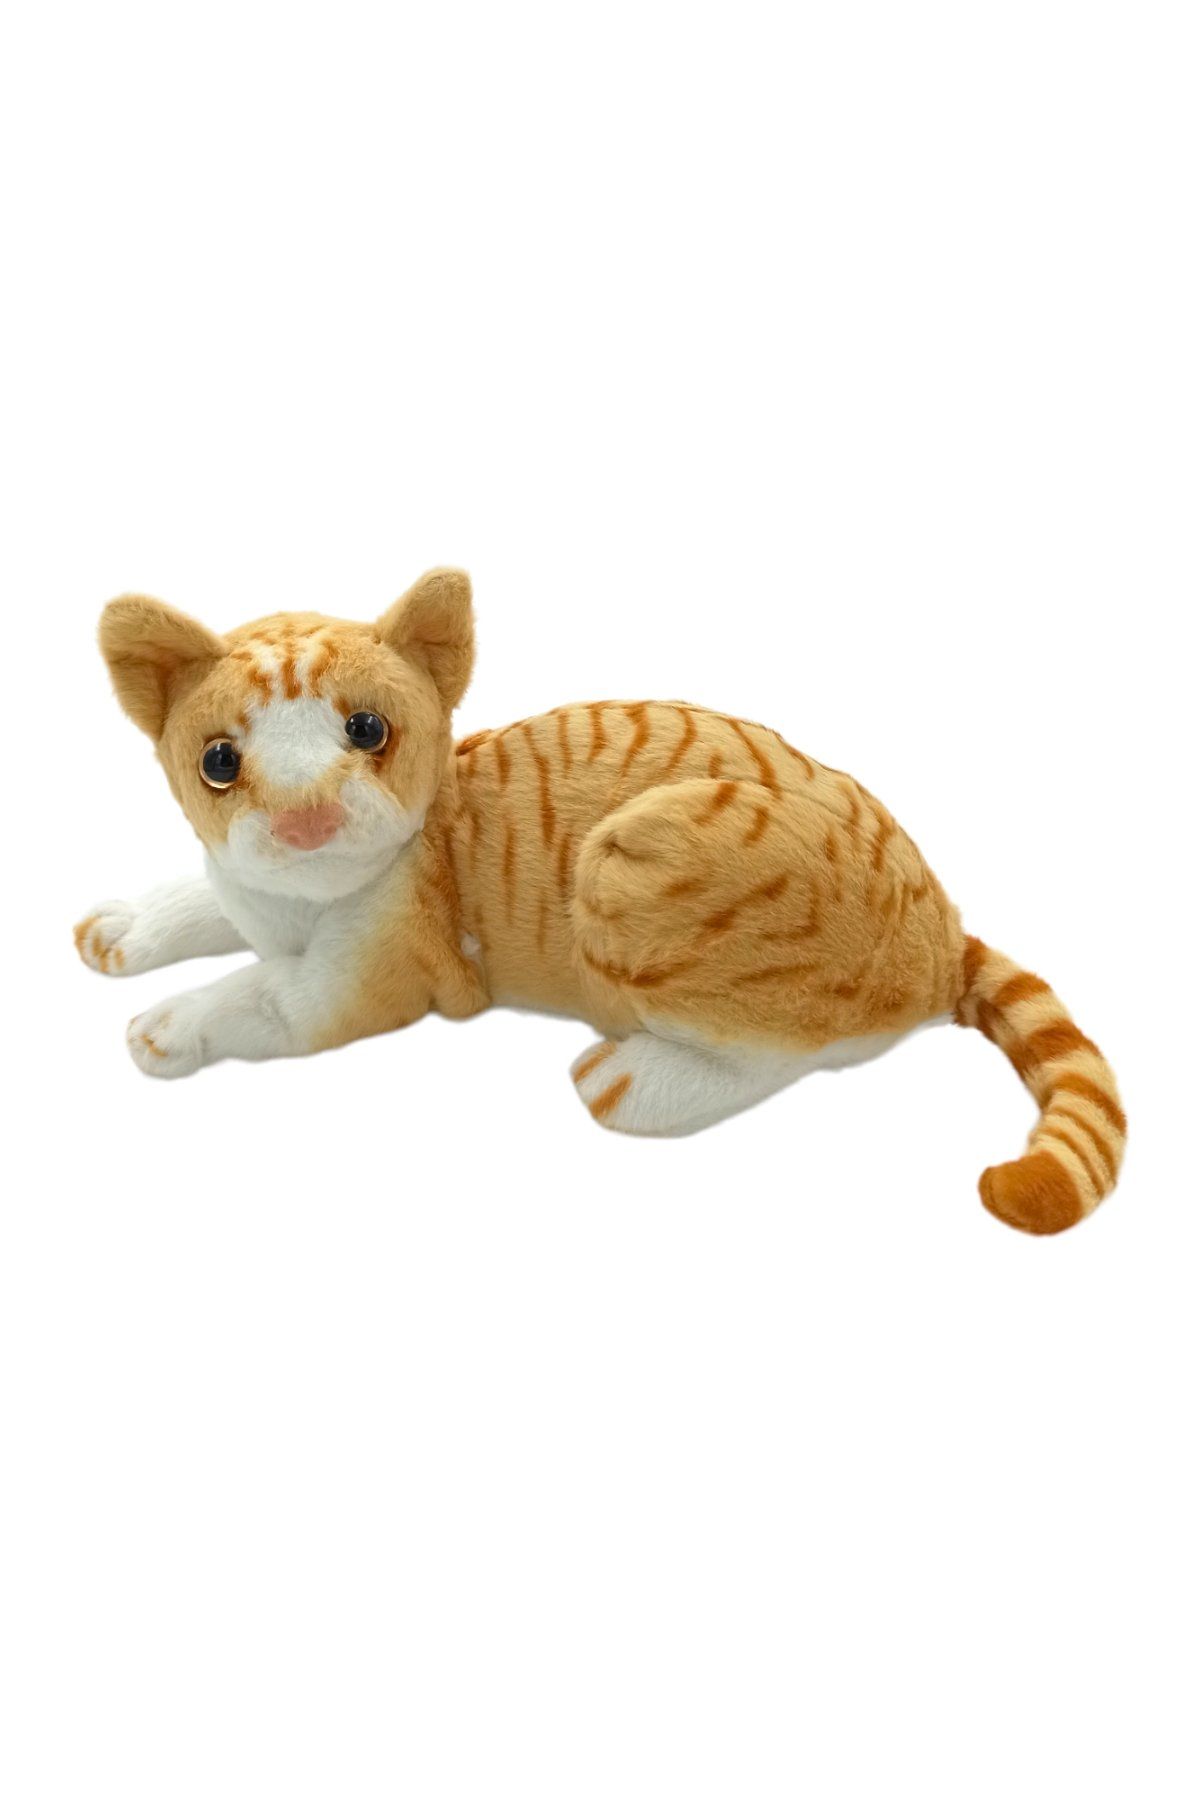 Yumuşacık Sevimli Kedi Dostunuz: Oturan Temalı 26cm Boyunda Oyuncak Peluş Kedi